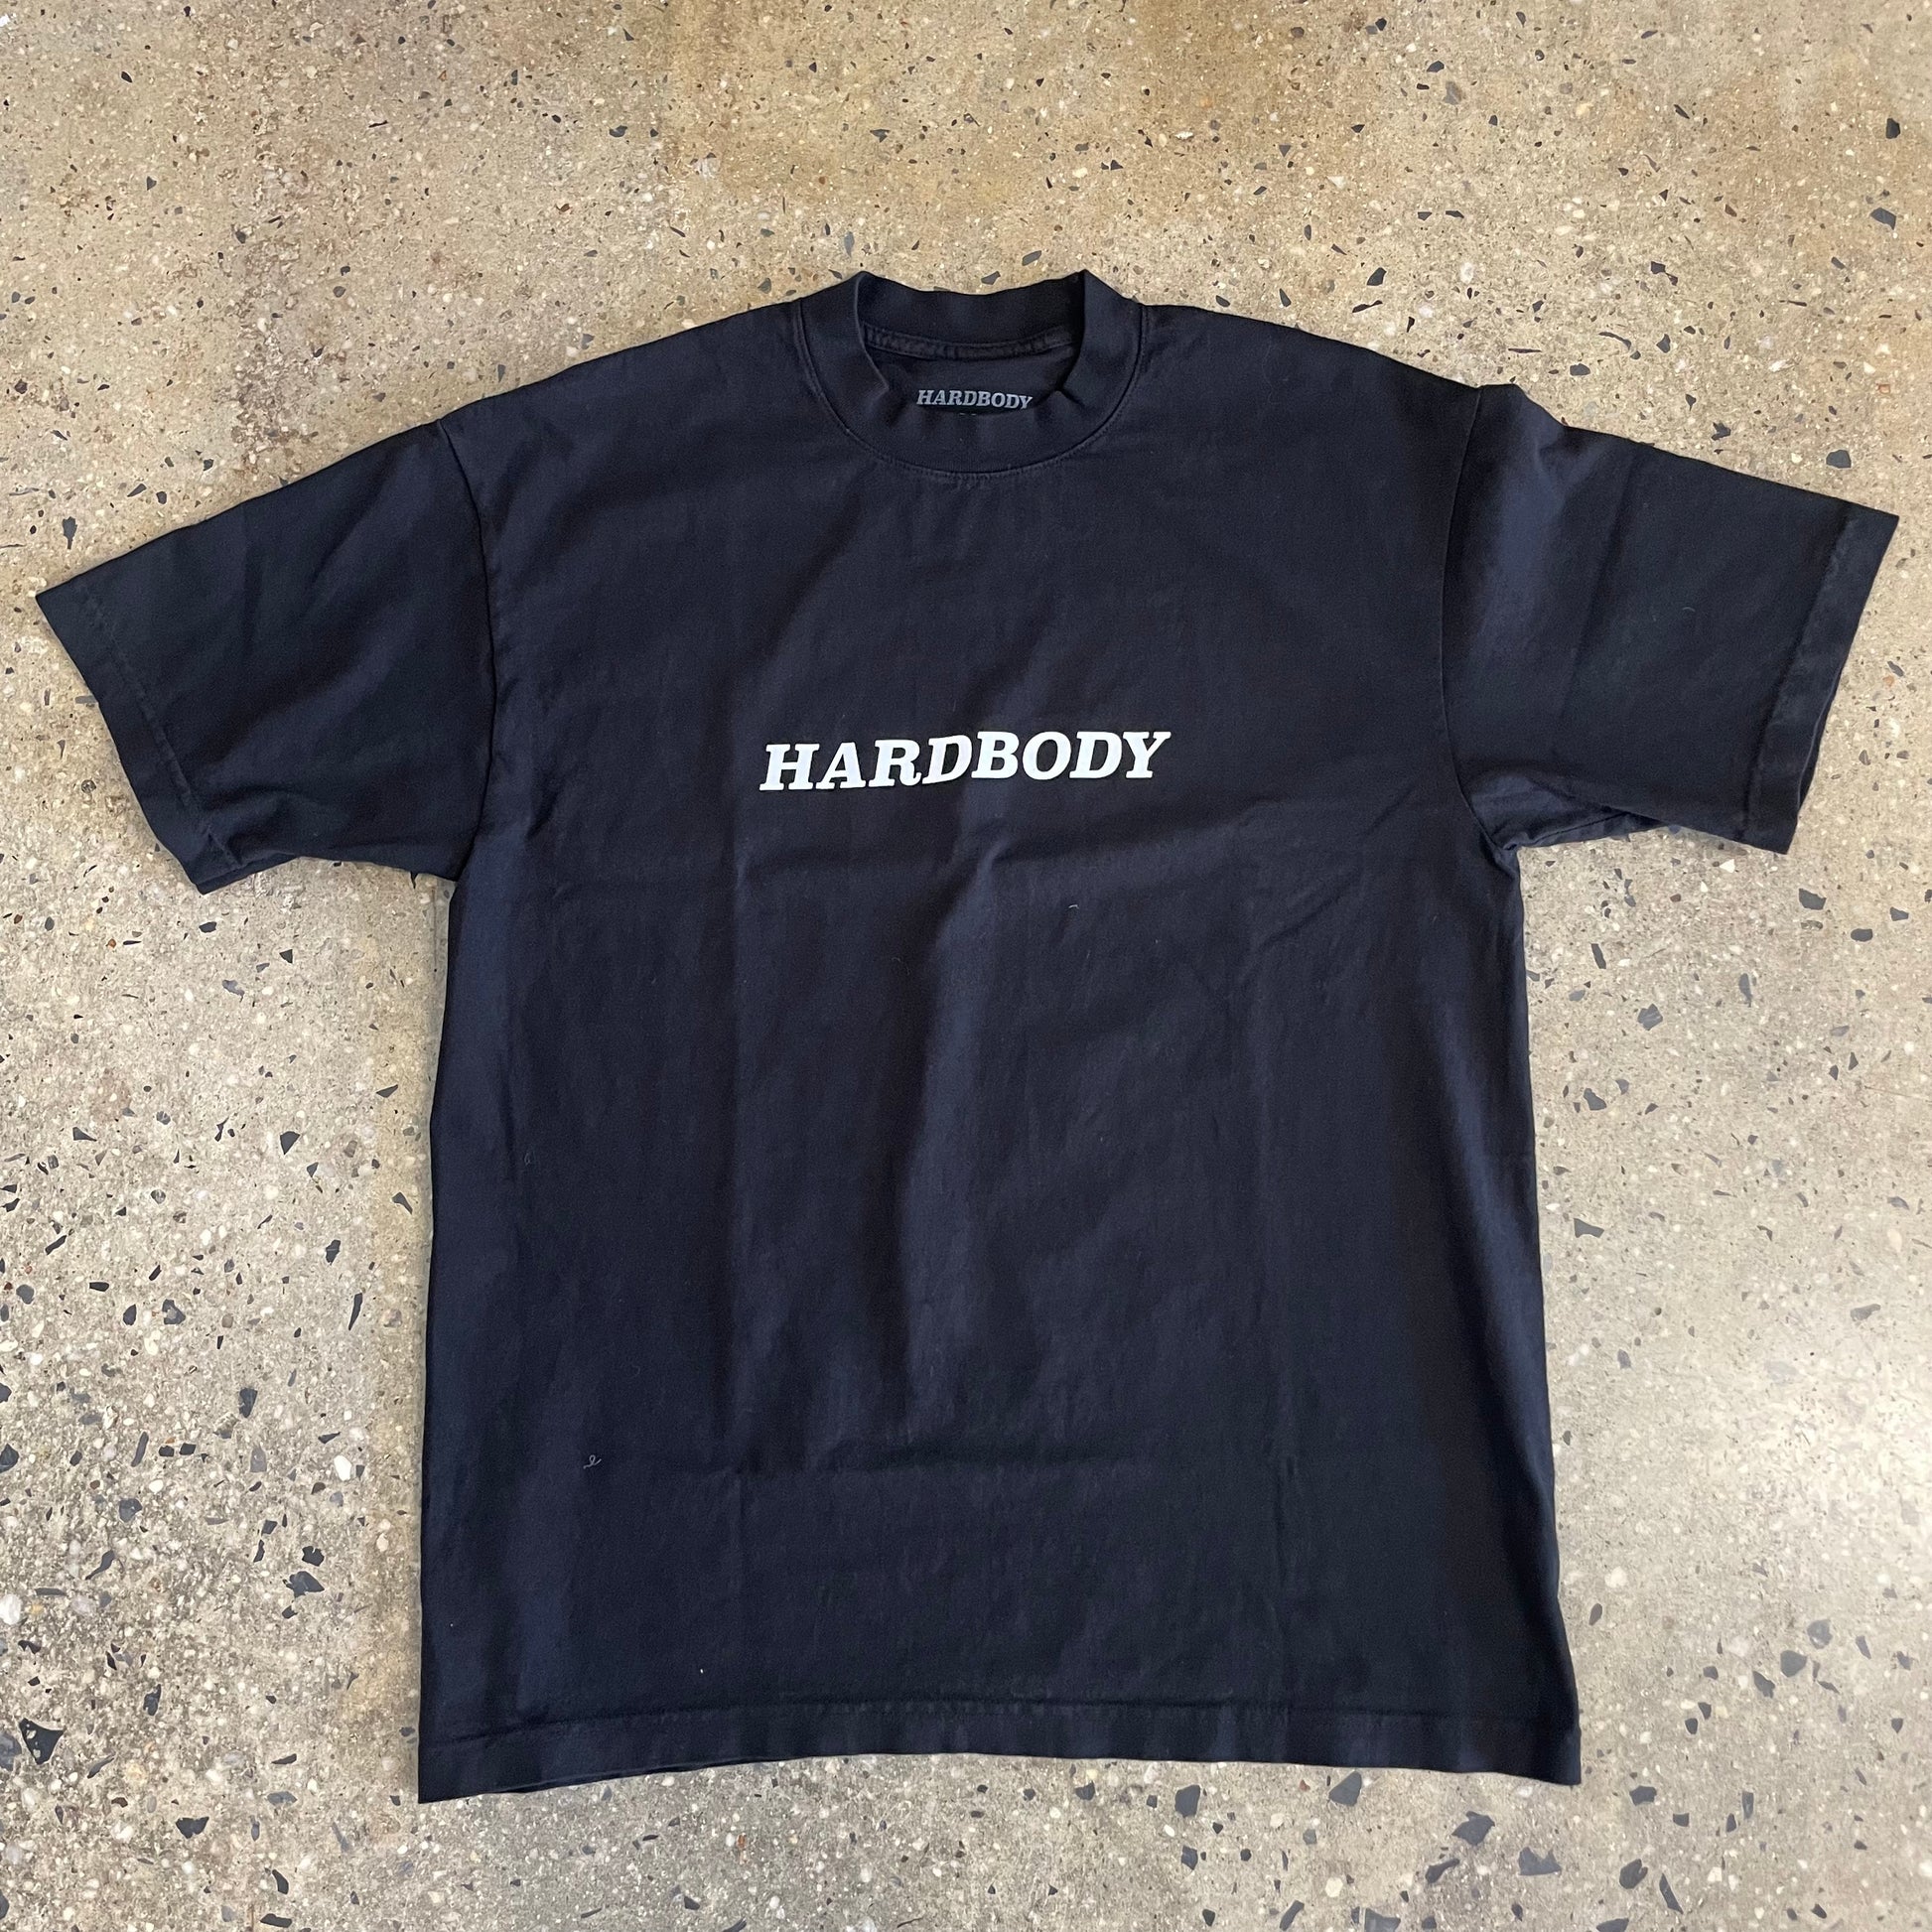 white Hardbody logo on black T-shirt